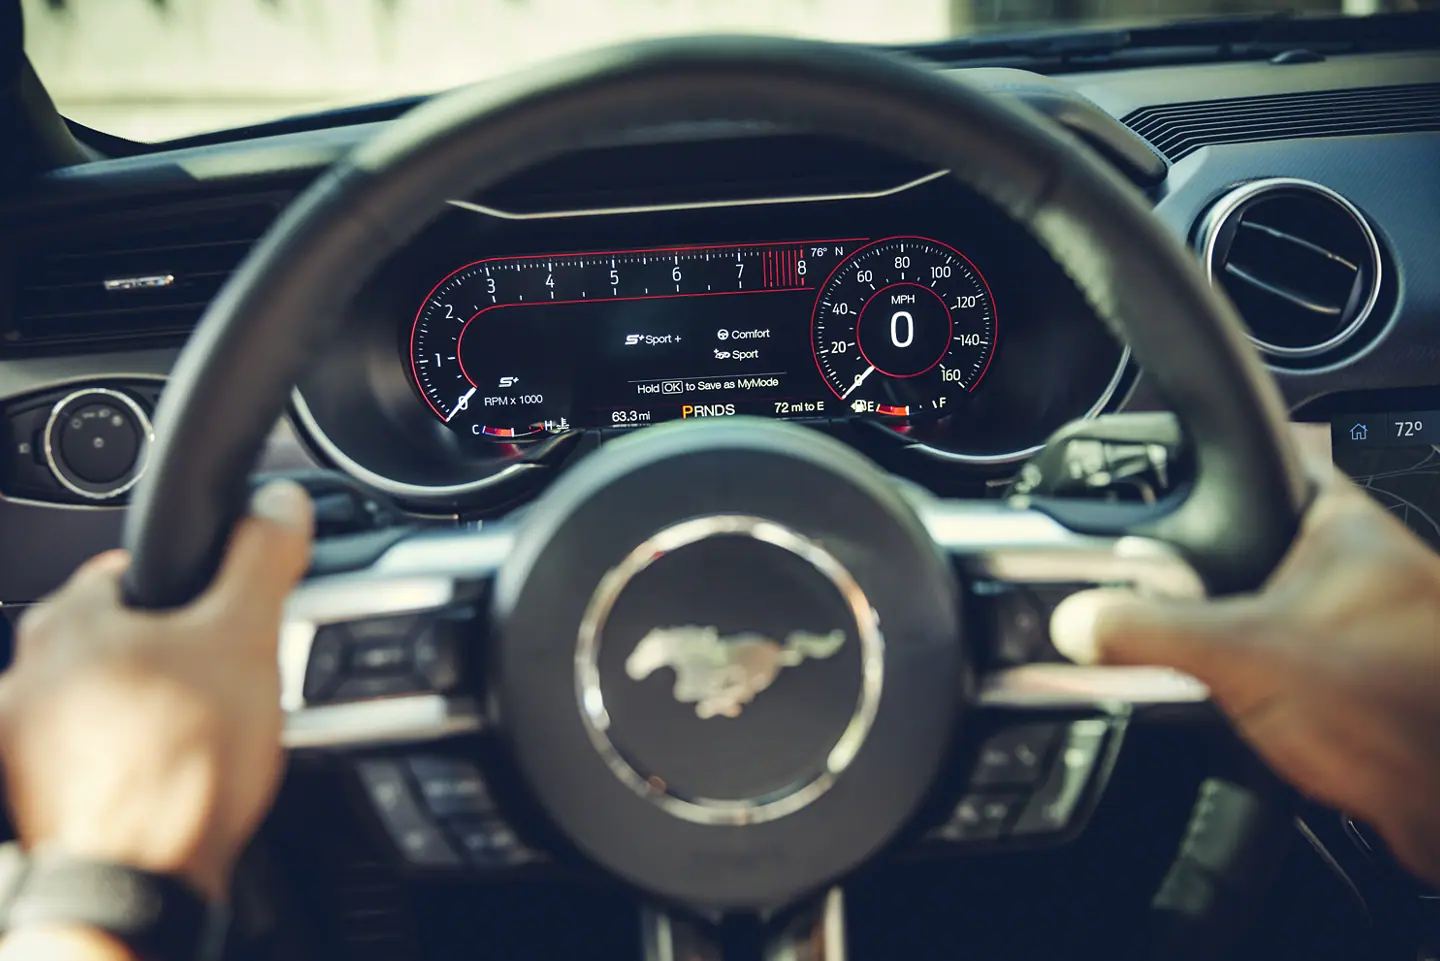 2021 Ford Mustang Steering Wheel